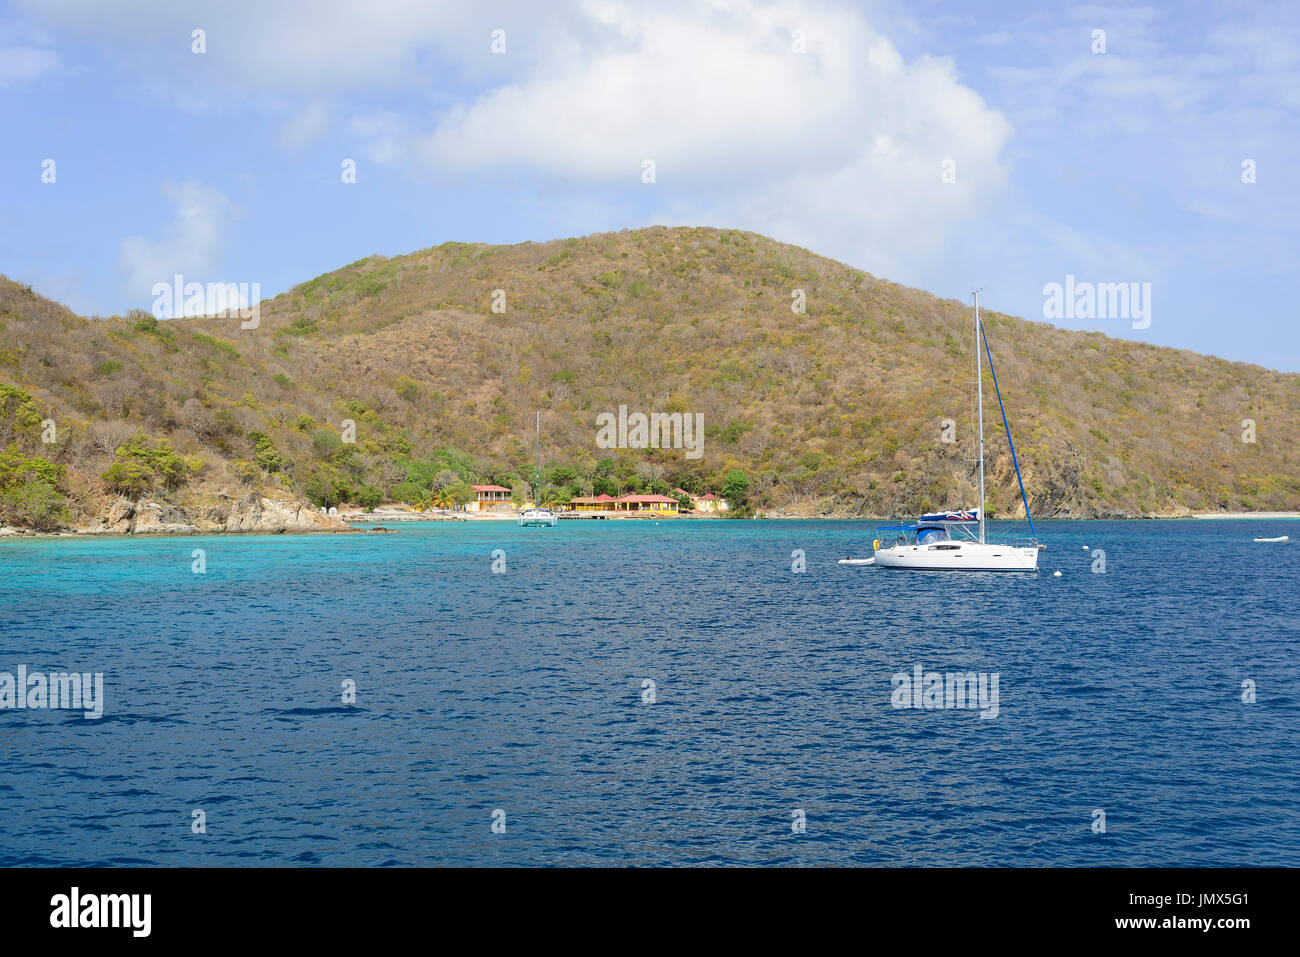 Barca a vela da Tortola Island, il Mare dei Caraibi, isola di Tortola, Isole Vergini Britanniche, Mar dei Caraibi Foto Stock